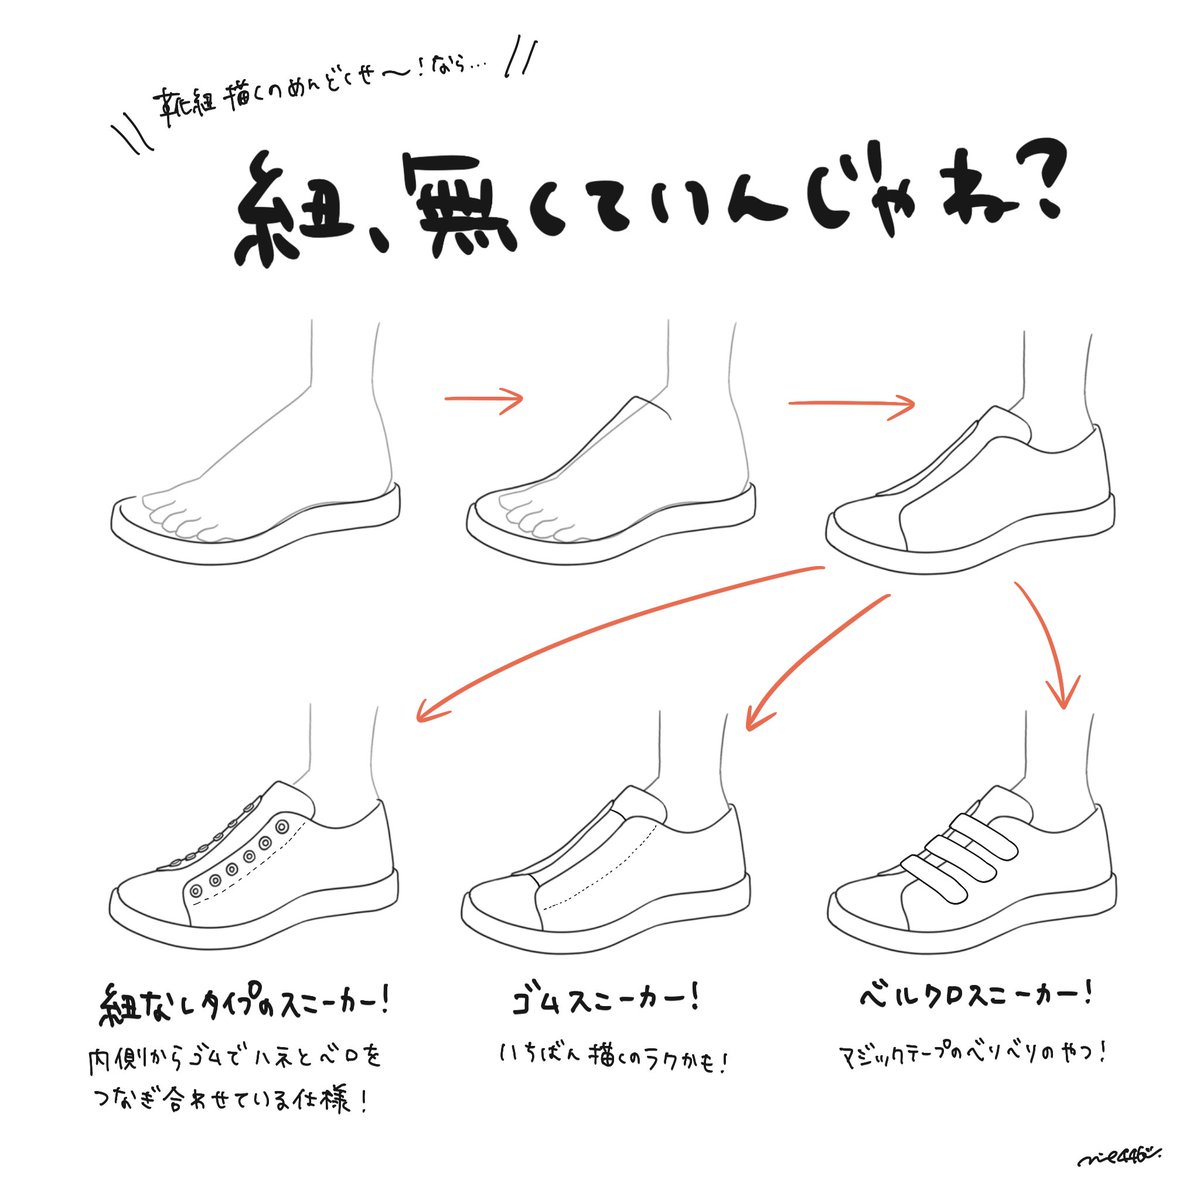 スニーカーを描く上での難所 紐の描き方 靴の描き方tips みえ 靴の描き方本制作中 の漫画